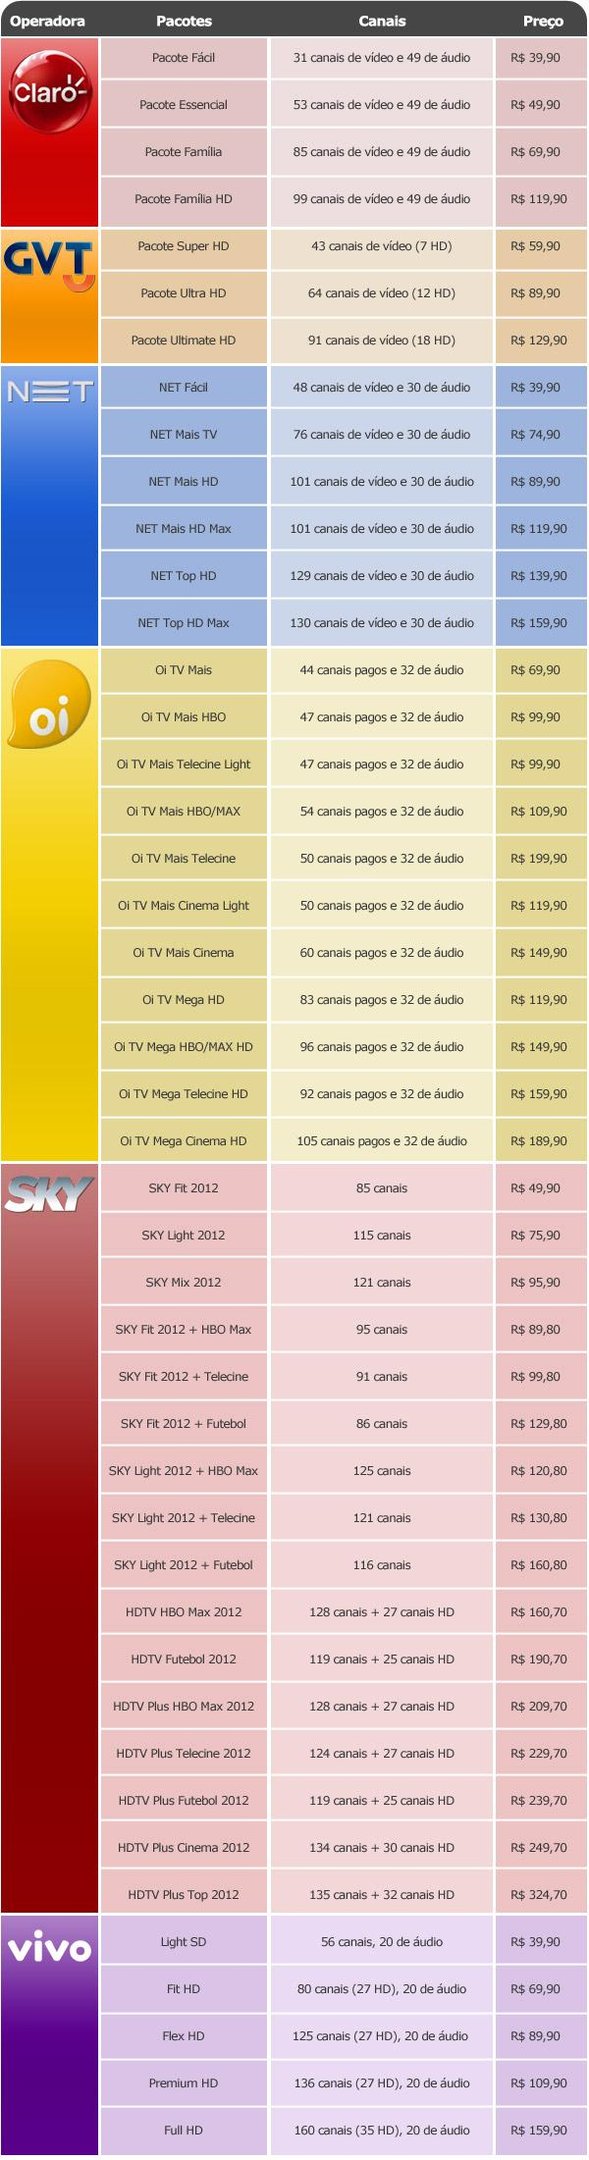 Confira a lista completa dos números dos canais da Claro TV - TV